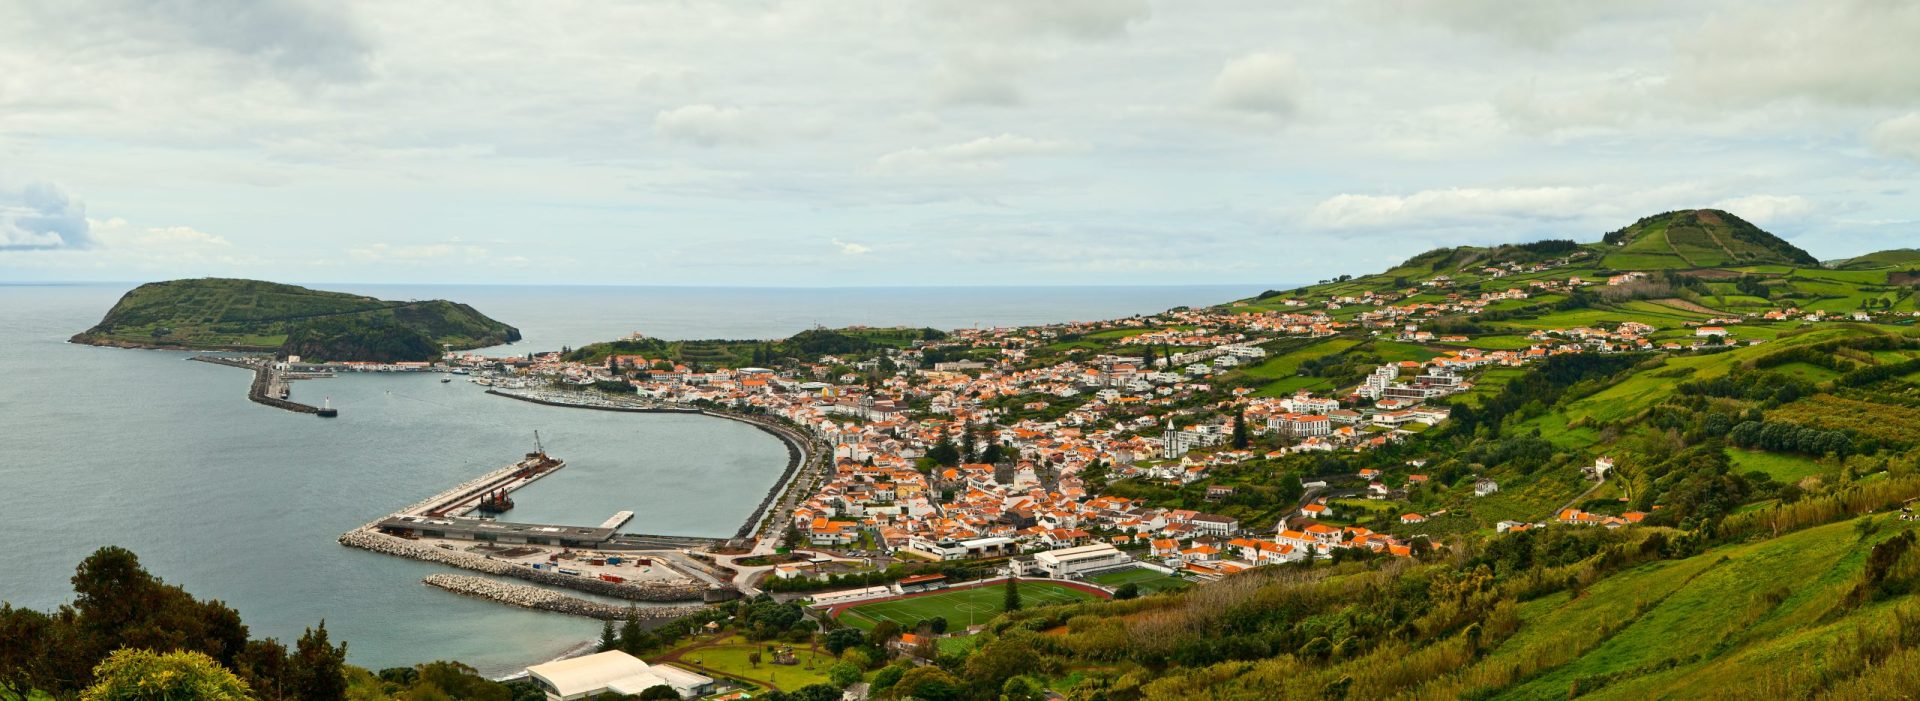 Terra à vista nos Açores. Uma nova ilha pode estar a chegar